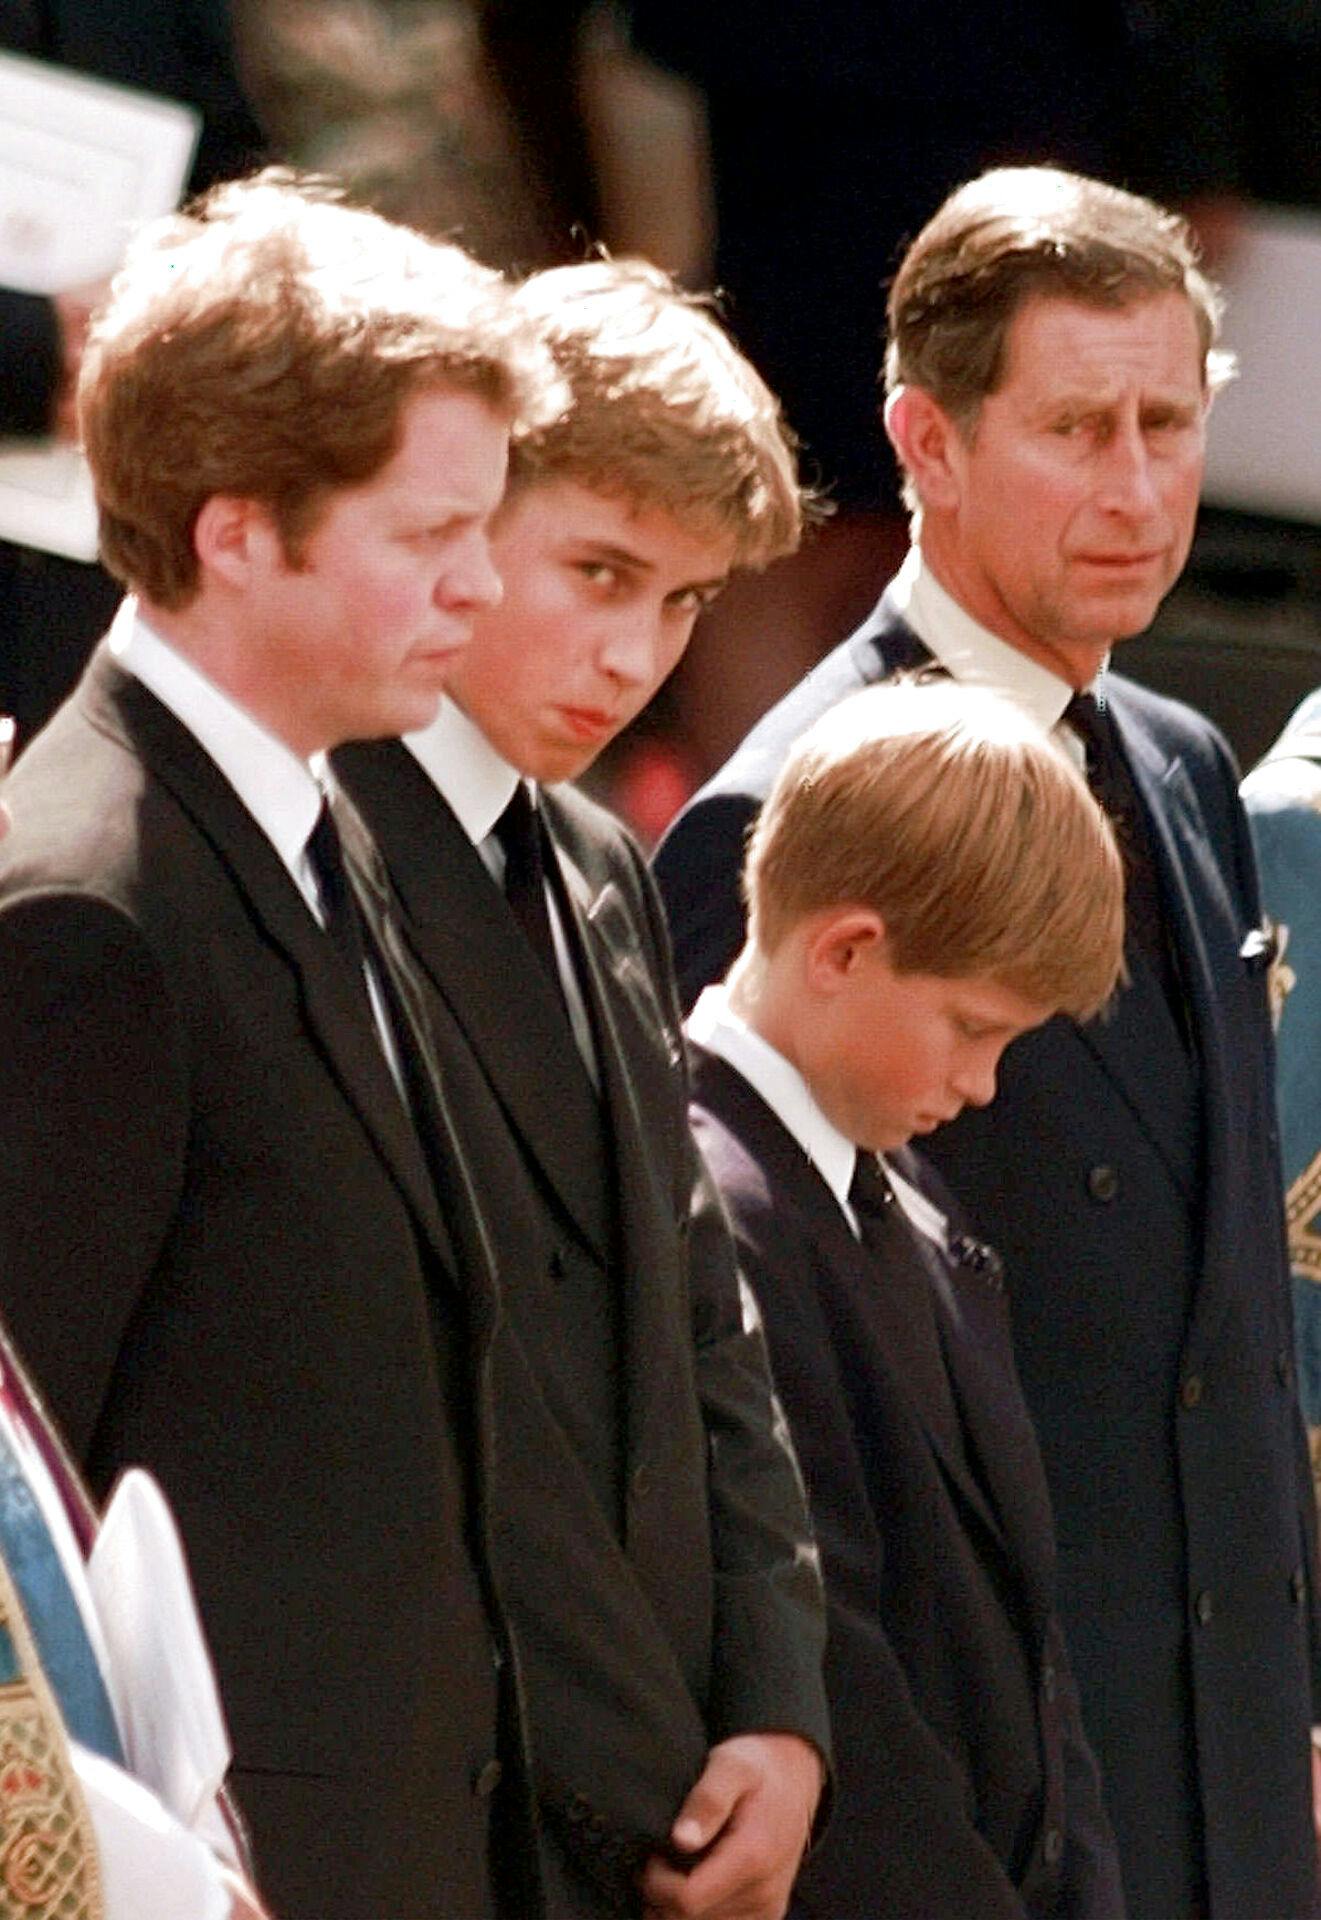 Prins Harry sammen med sin familie under prinsesse Dianas begravelse 6. september 1997.
